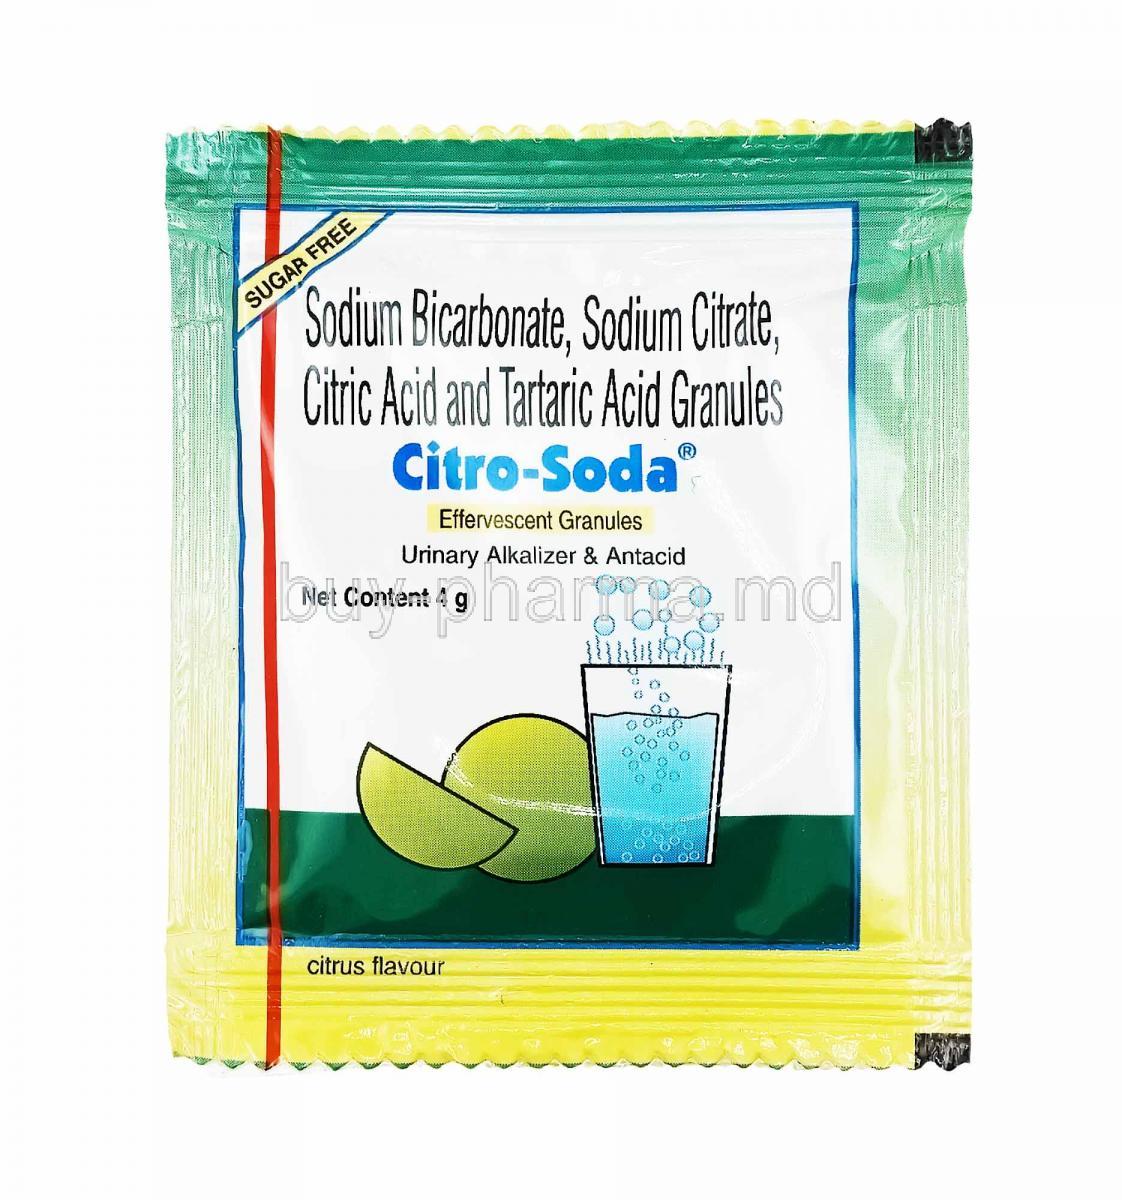 Citro-Soda Effervescent Granules sachet